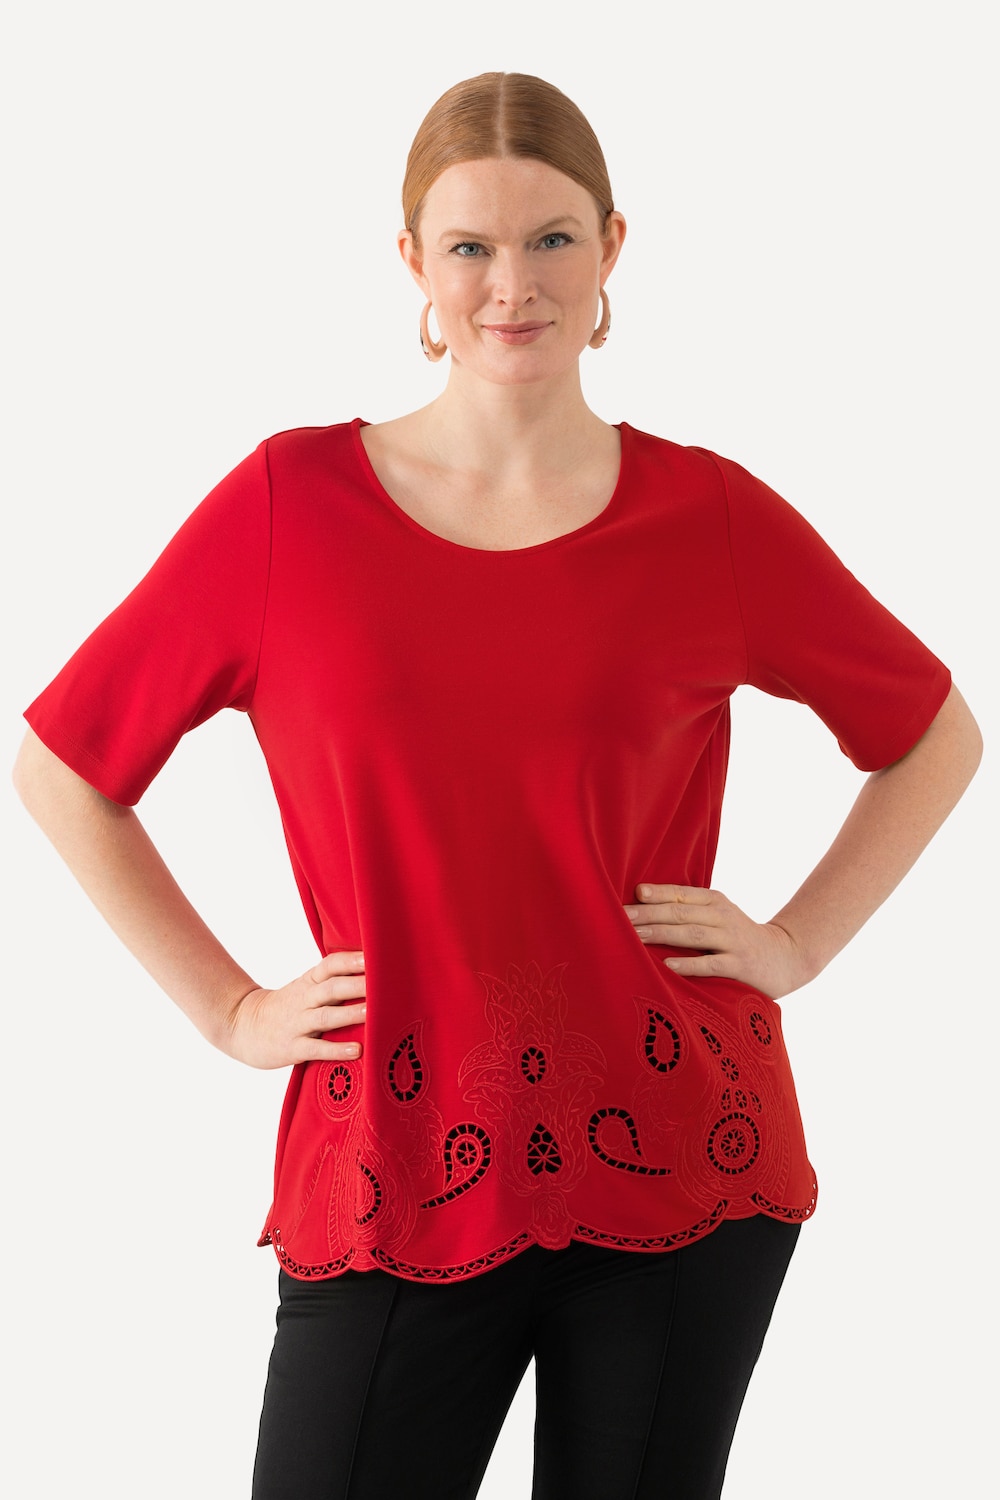 Grote Maten T-shirt, Dames, rood, Maat: 46/48, Viscose/Synthetische vezels, Ulla Popken